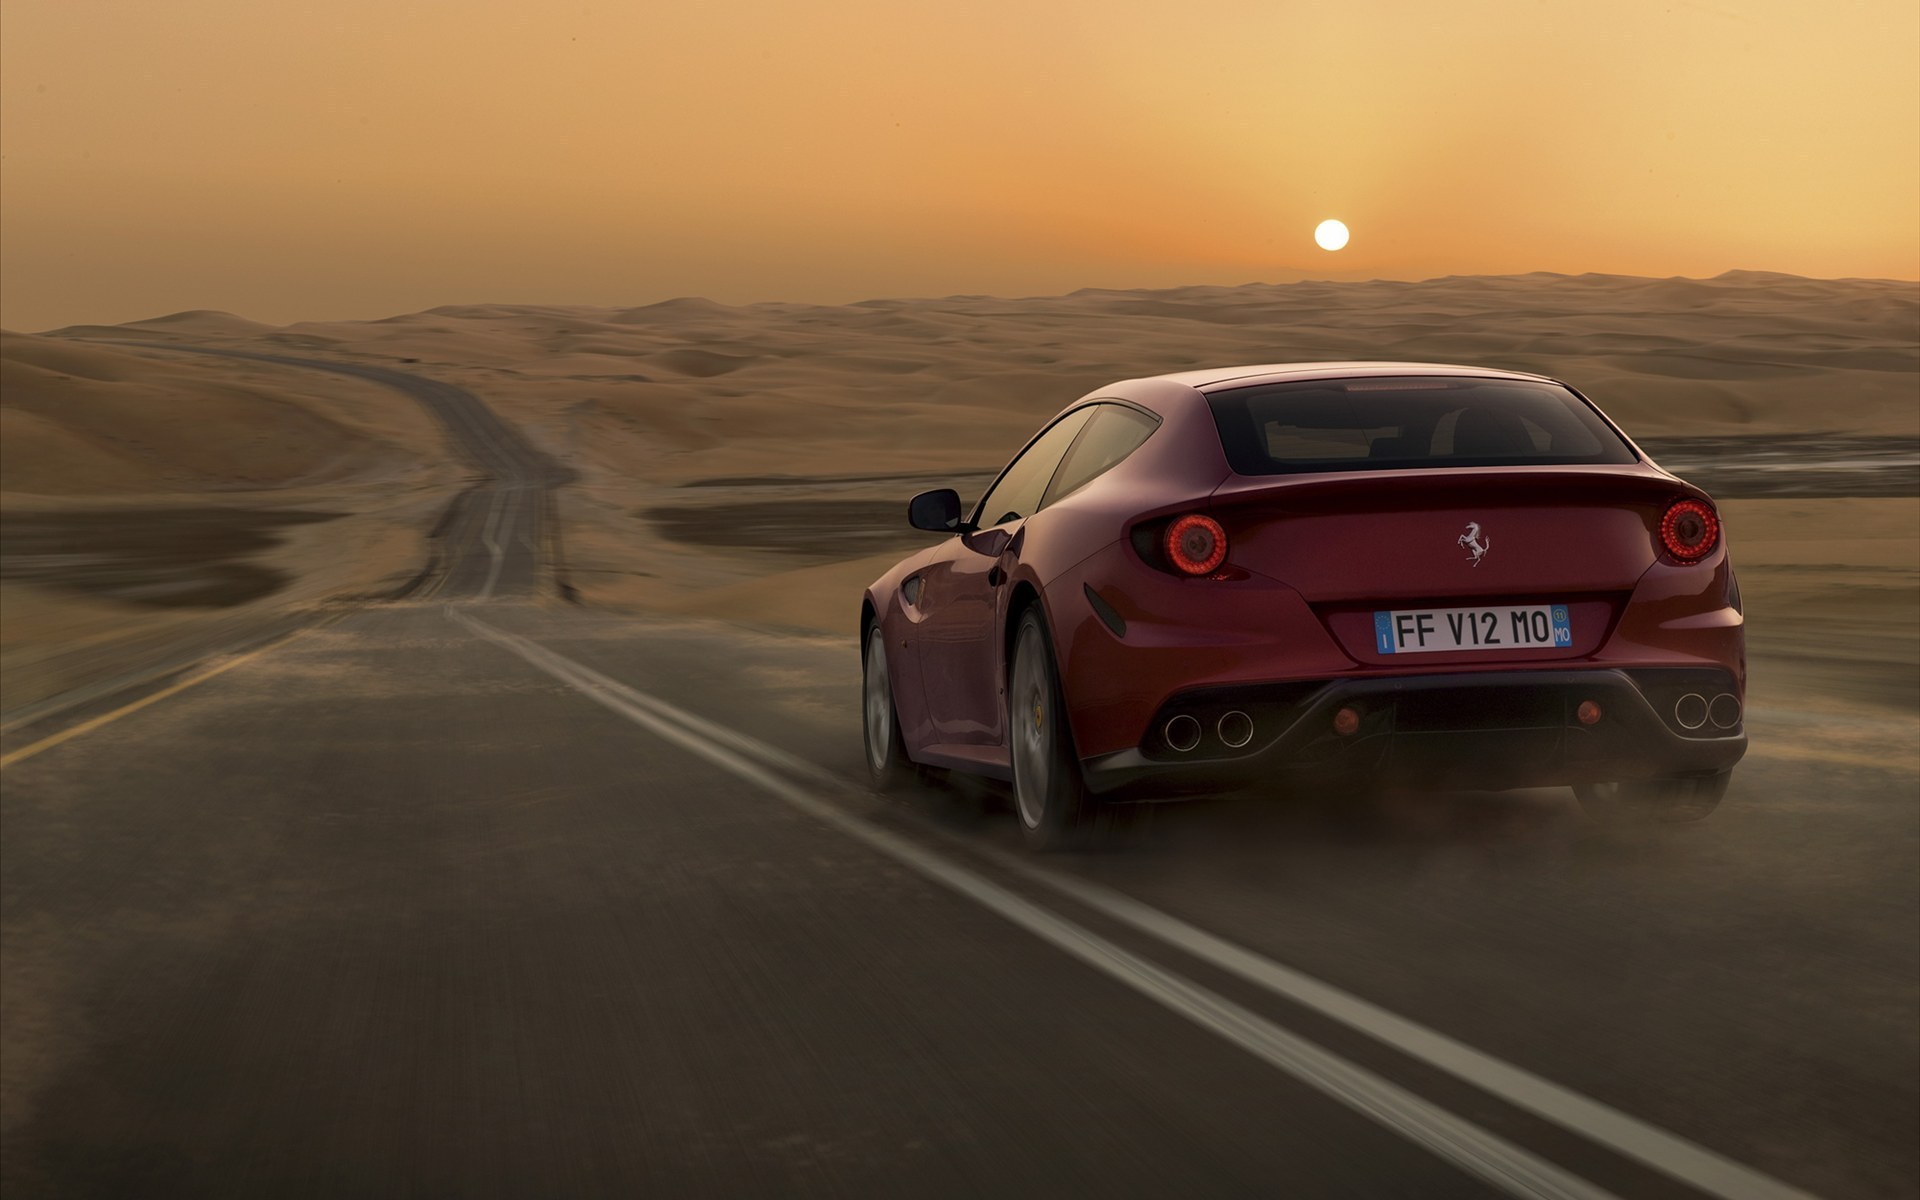 3d обои Ferrari / Феррари на дороге среди пустыни на фоне заката (FF V12 MO)  солнце # 81530